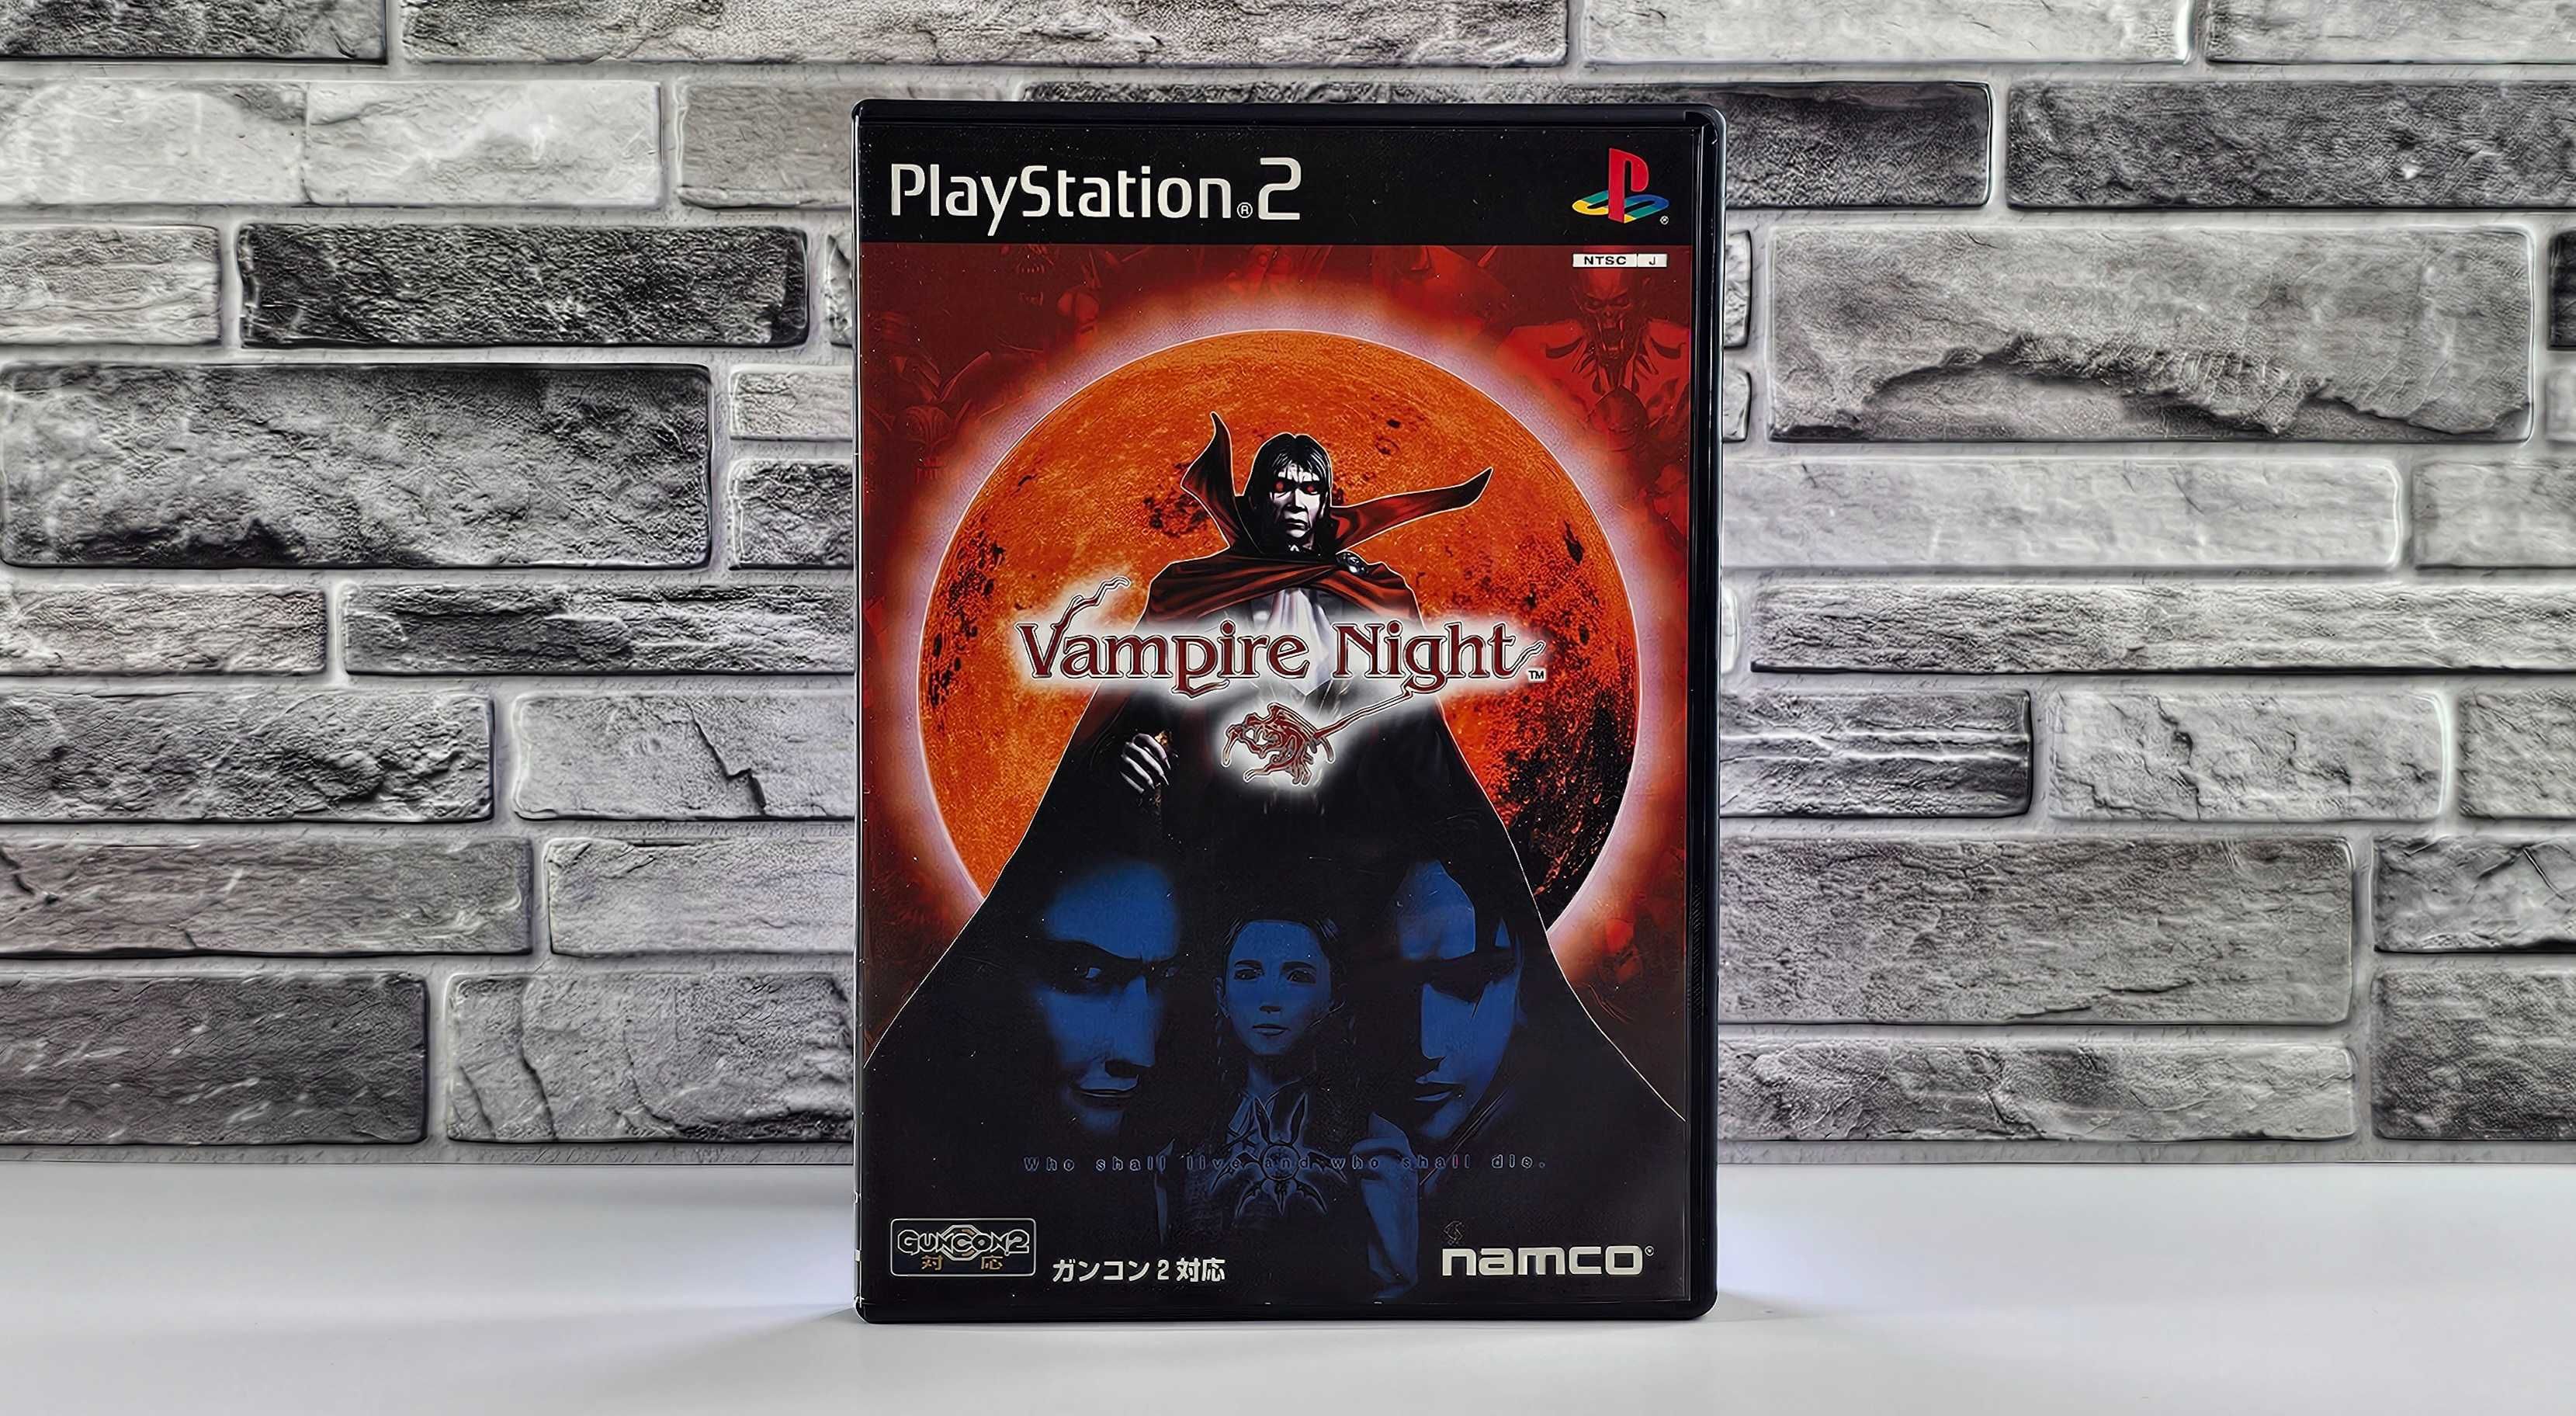 Playstation 2 Vampire Night